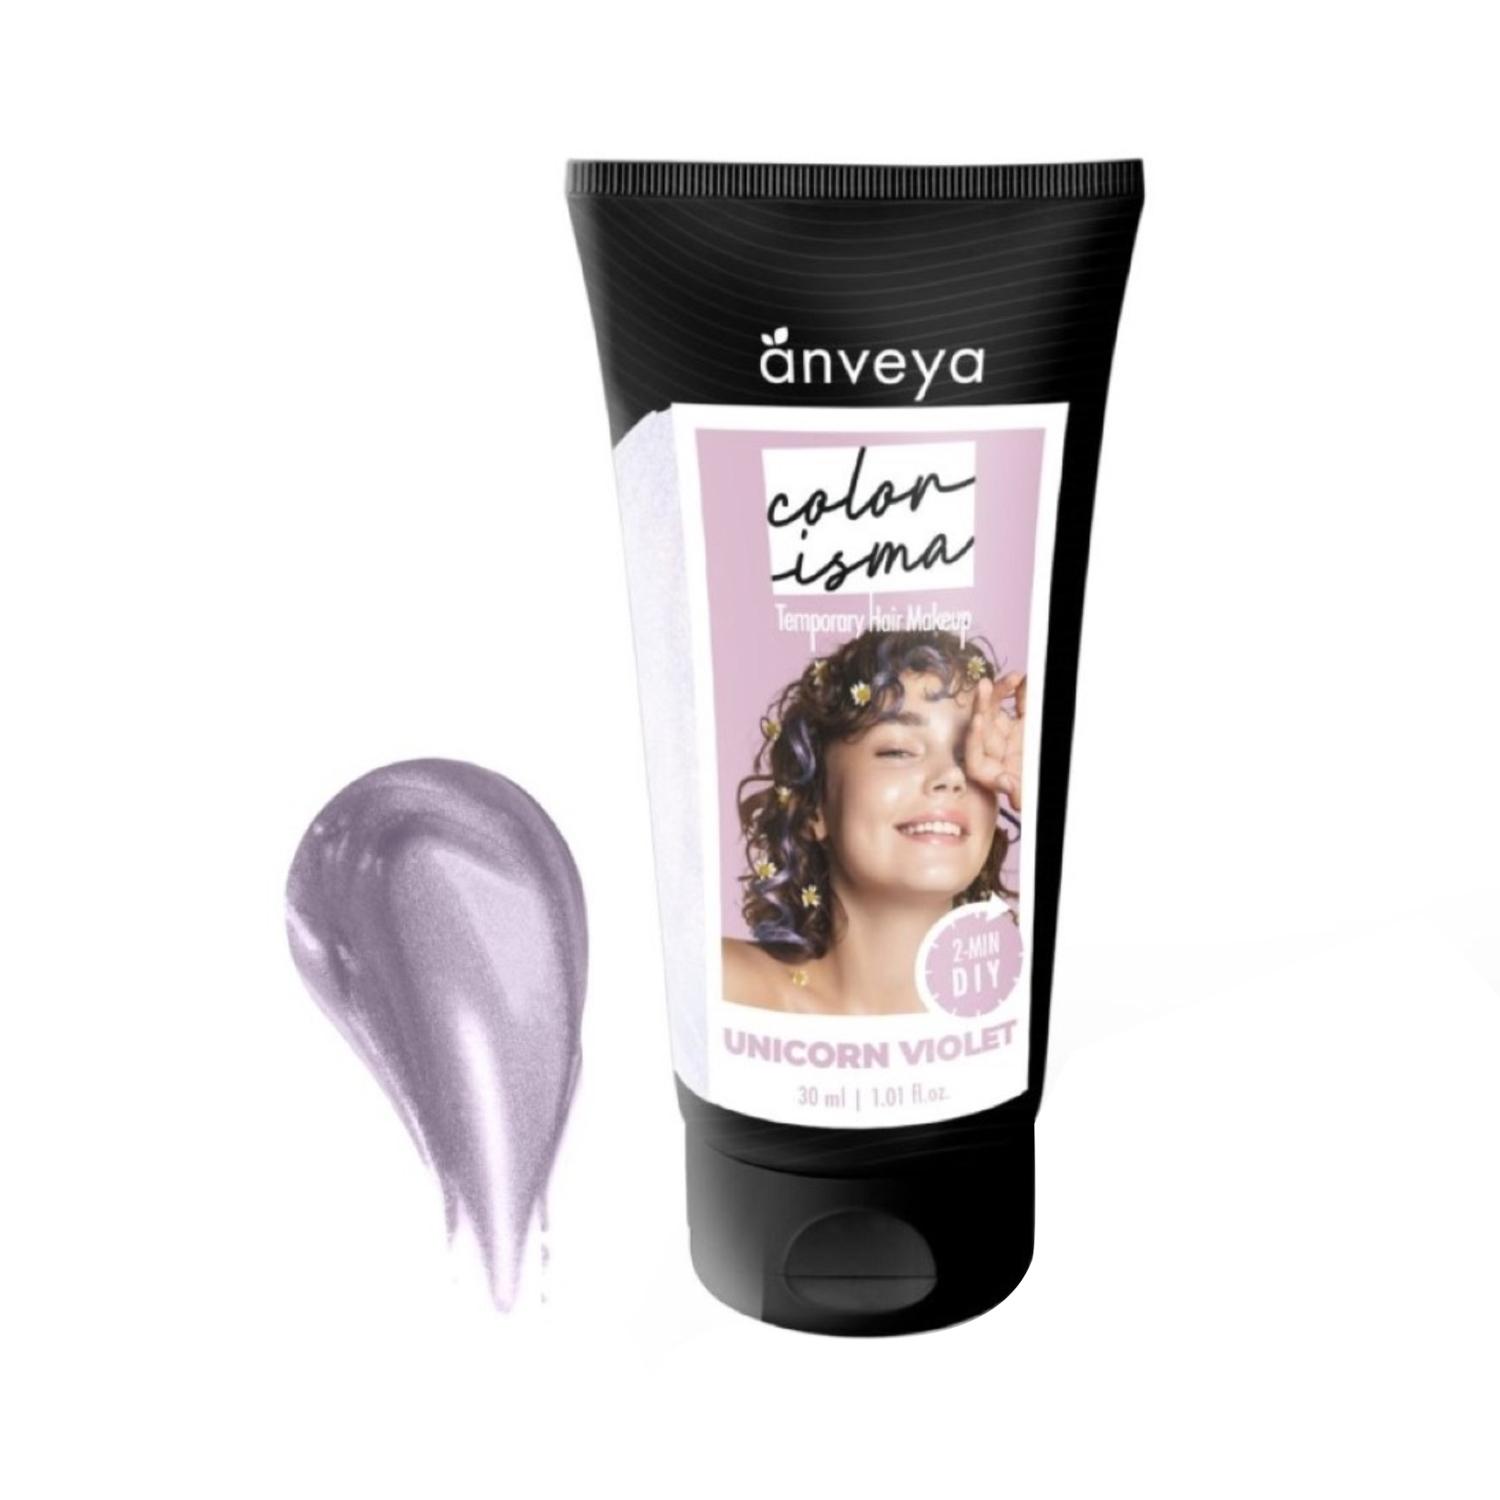 anveya colorisma hair color makeup - unicorn violet (30ml)